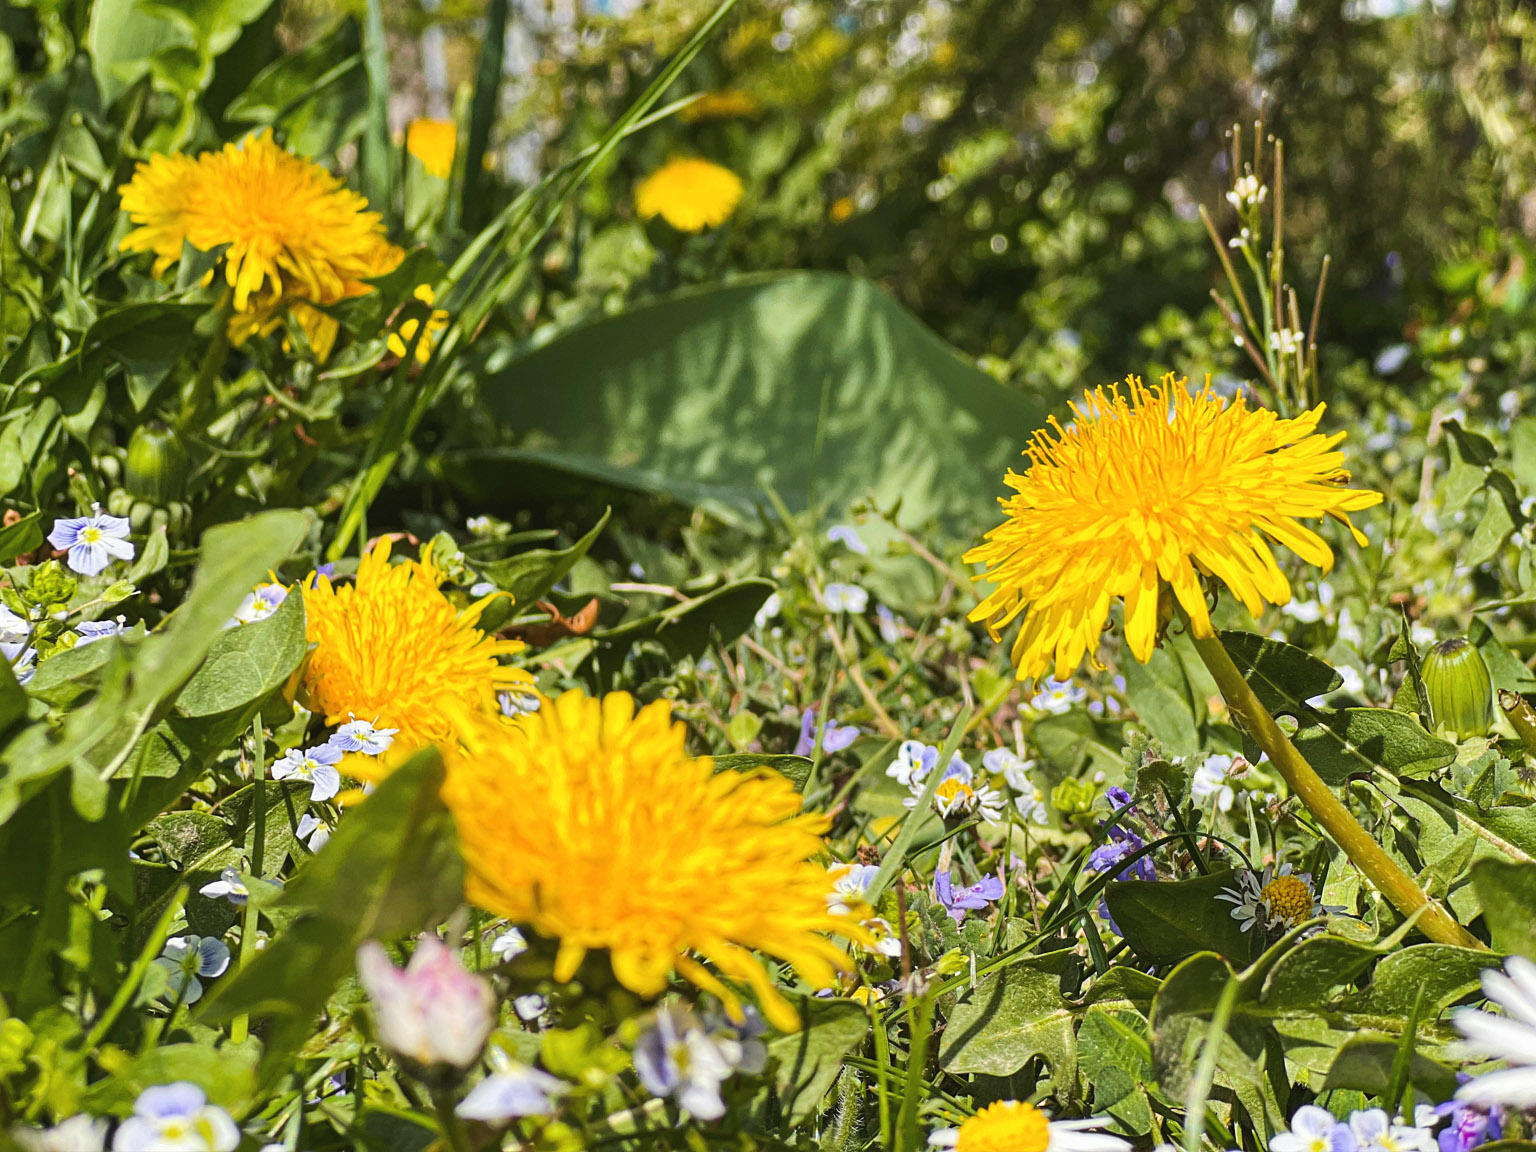 Gelb blühende Löwenzähne auf einer Blumenwiese